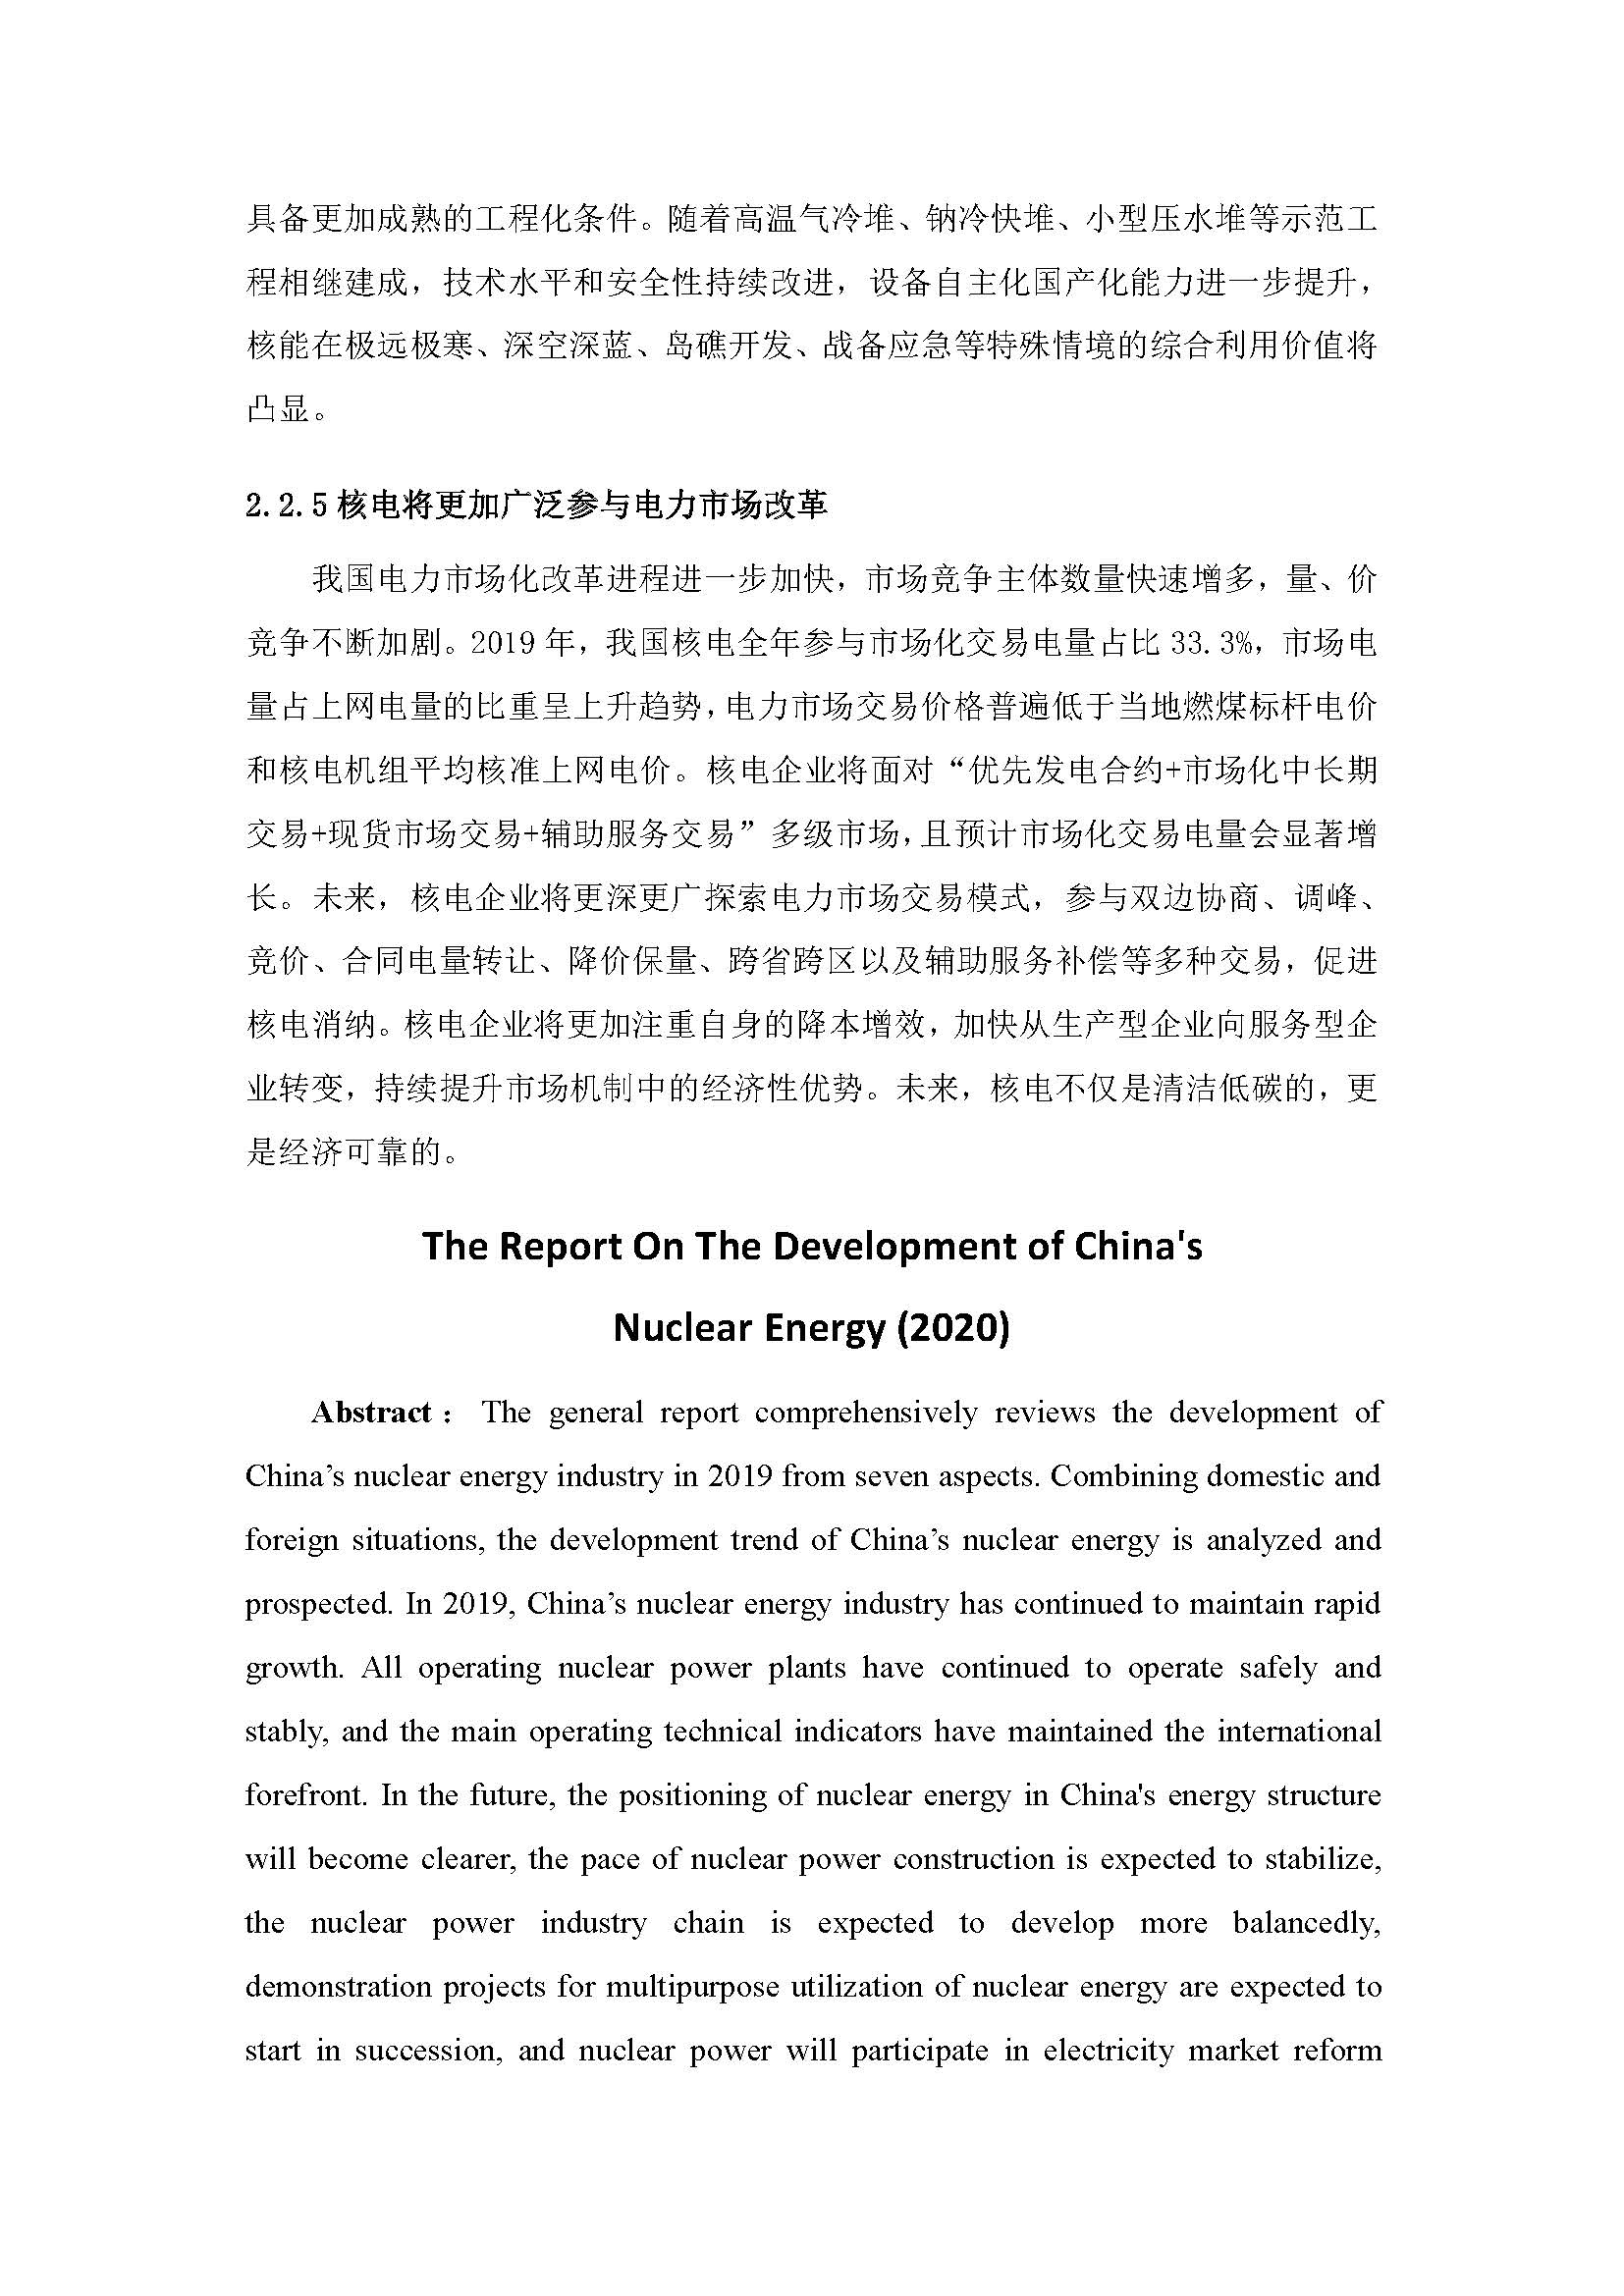 中国核能年度发展与展望（2020）_页面_17.jpg